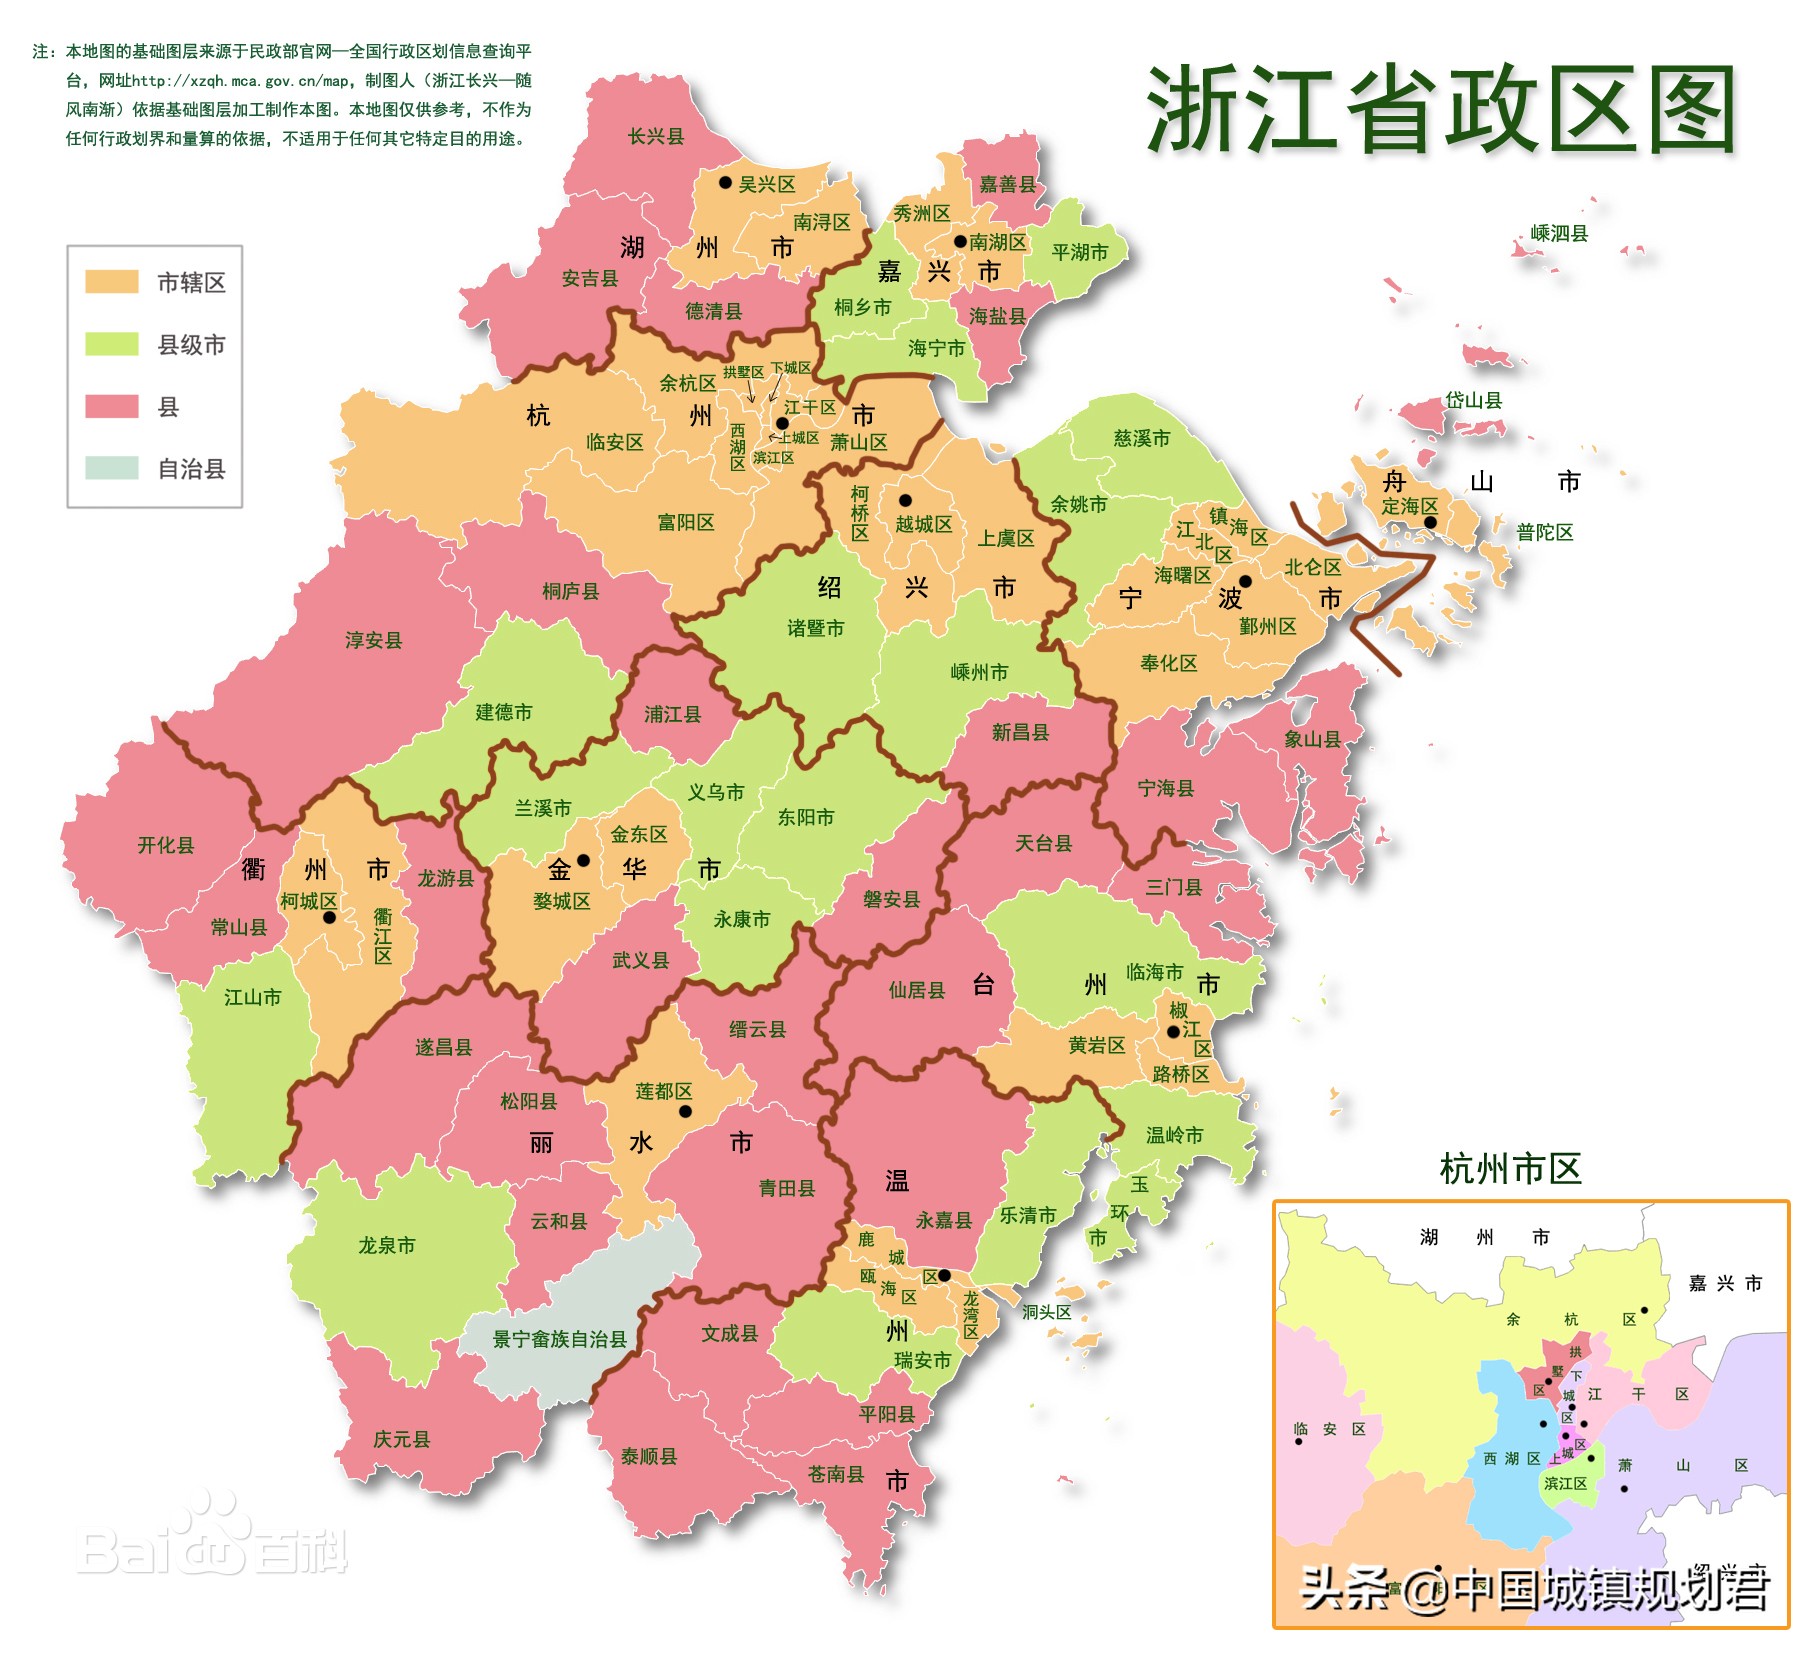 45省级行政区划改革图片